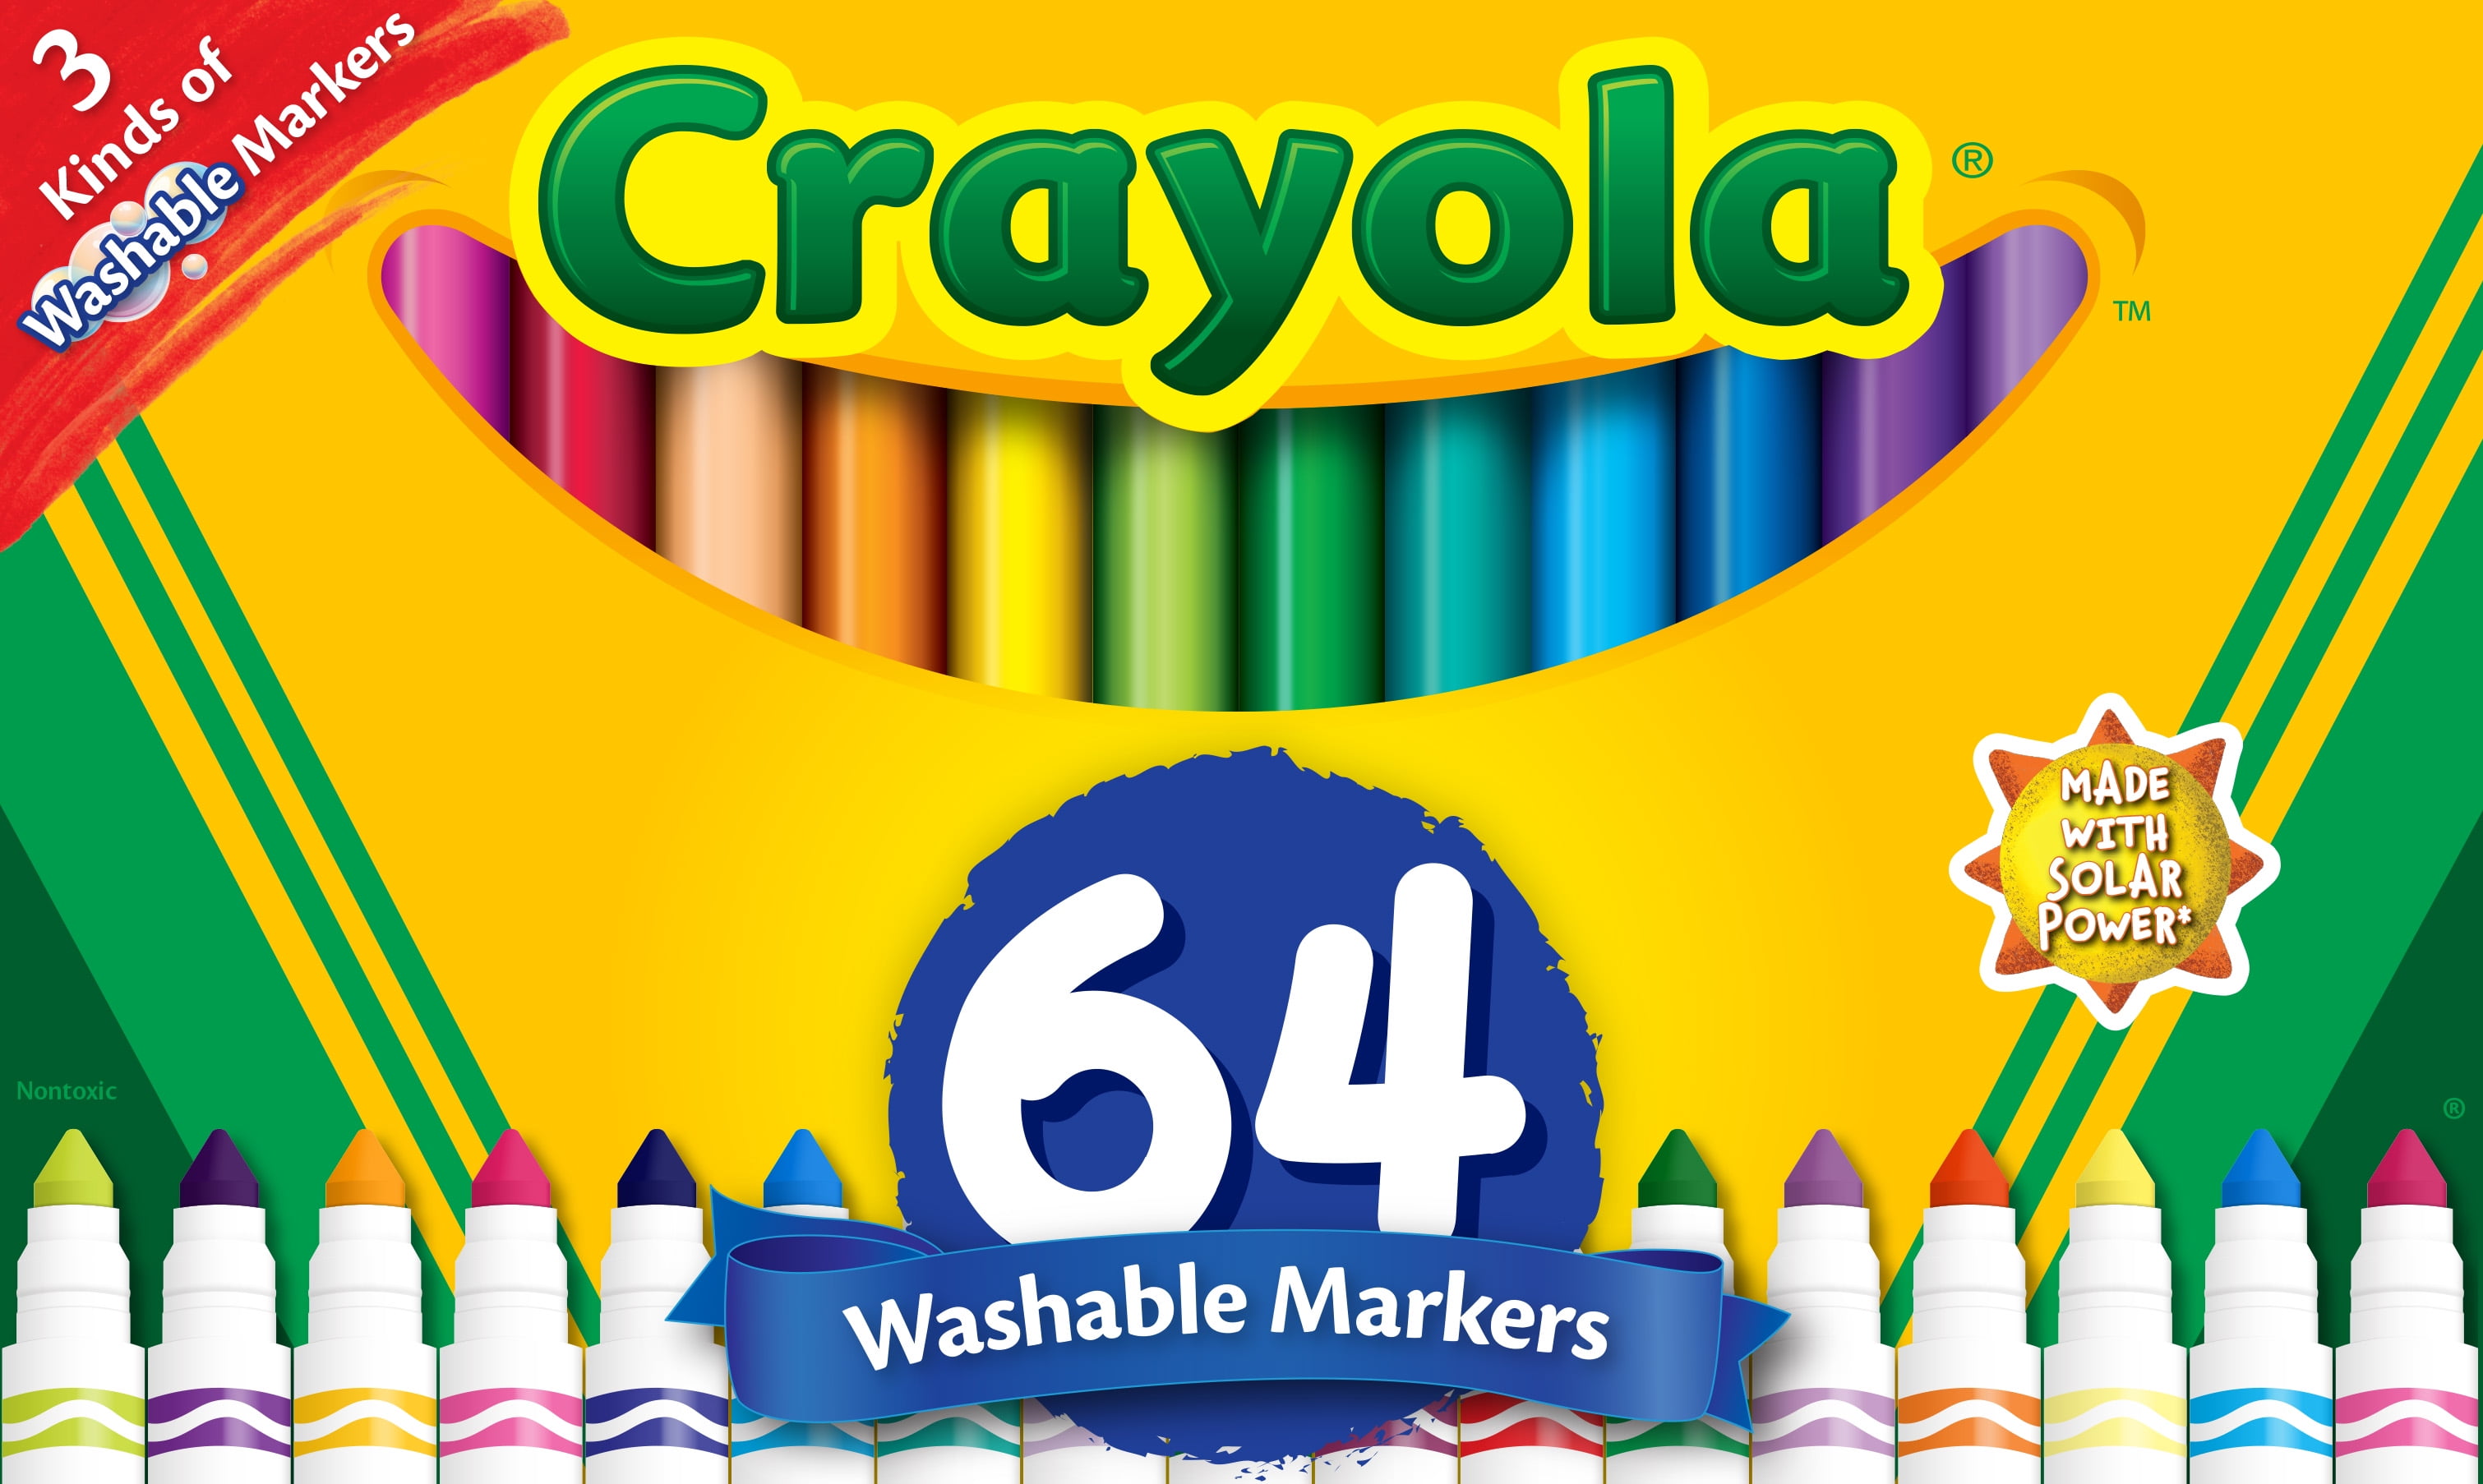 Crayola Washable Markers, 40-Count - Arts & Crafts - Hallmark